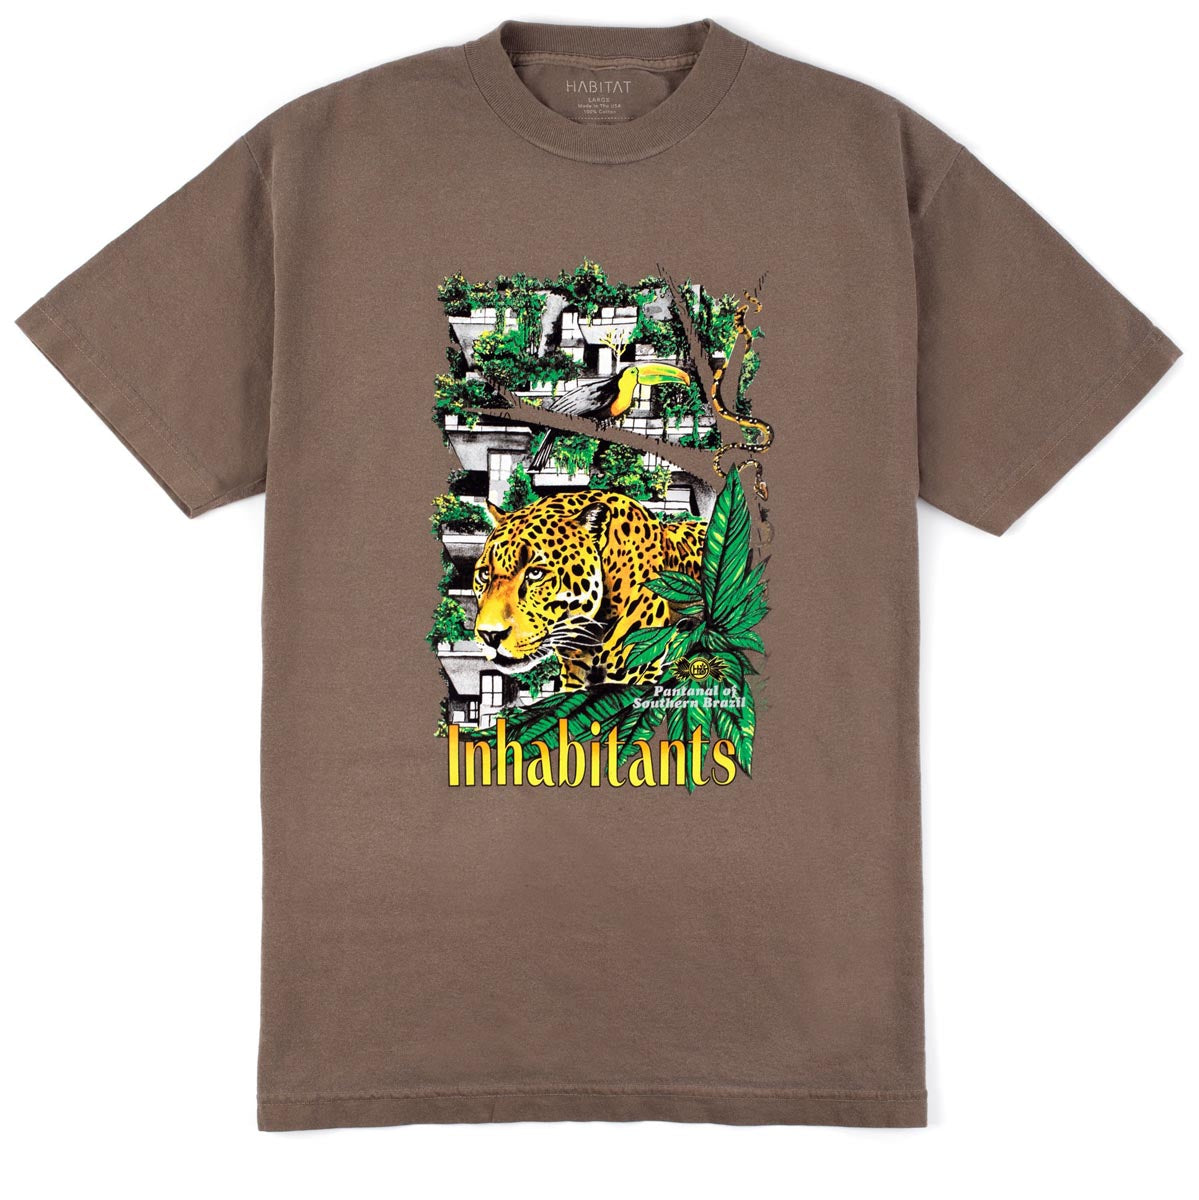 Habitat Pantanal Inhabitants T-Shirt - Washed Brown image 1